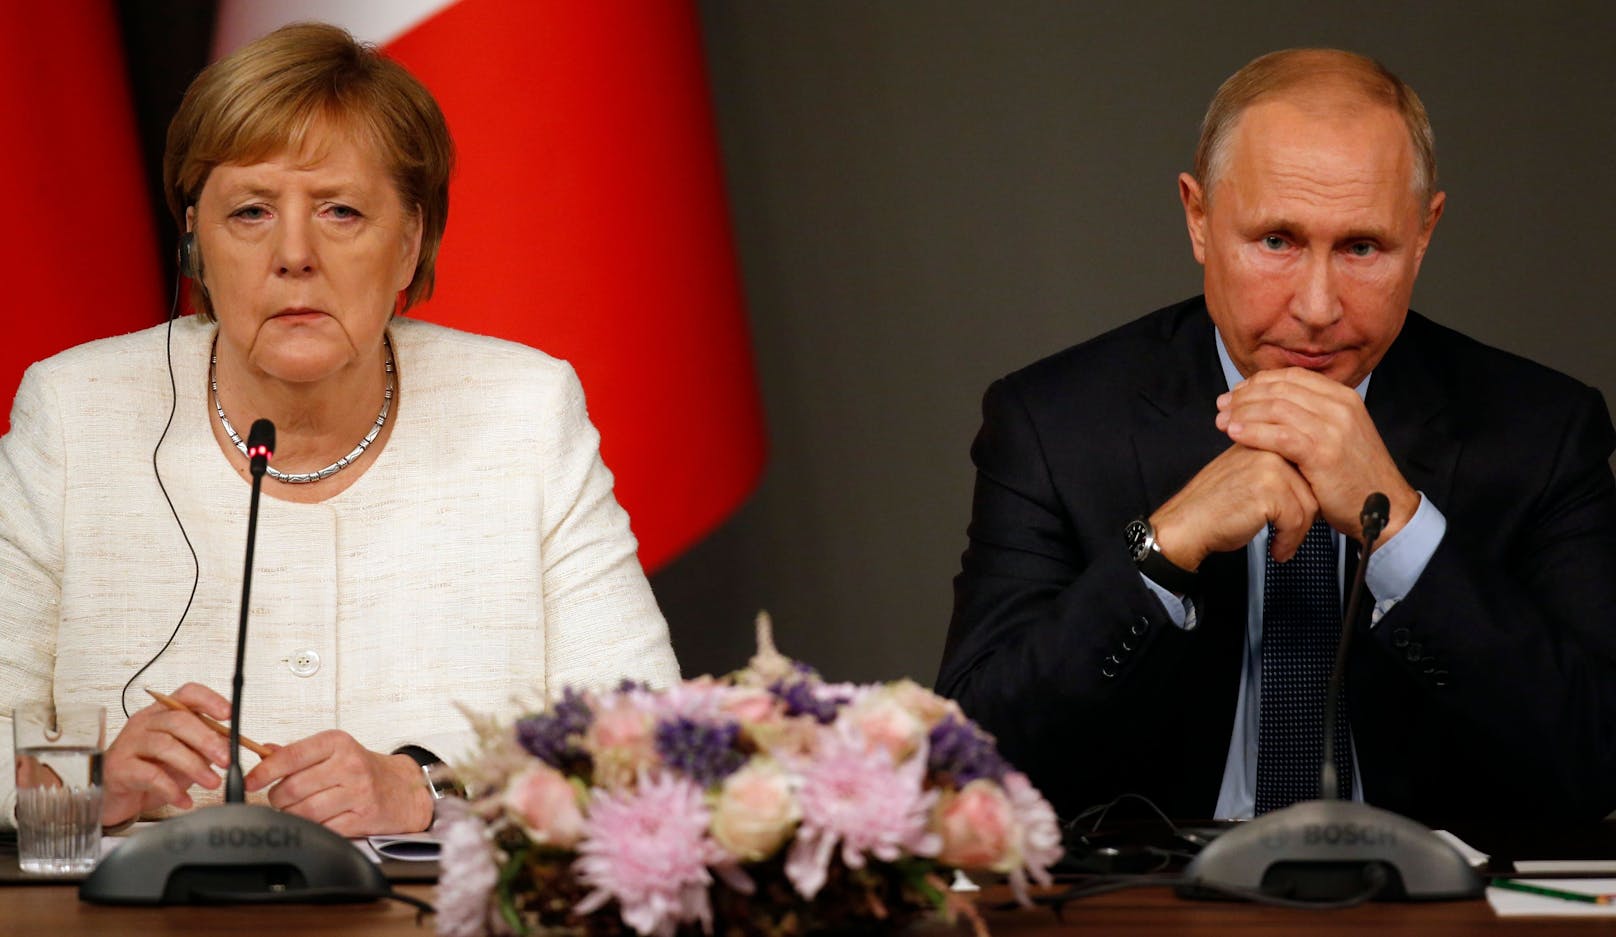 Merkel schweigt – Kein Kommentar zu Putins Verbrechen